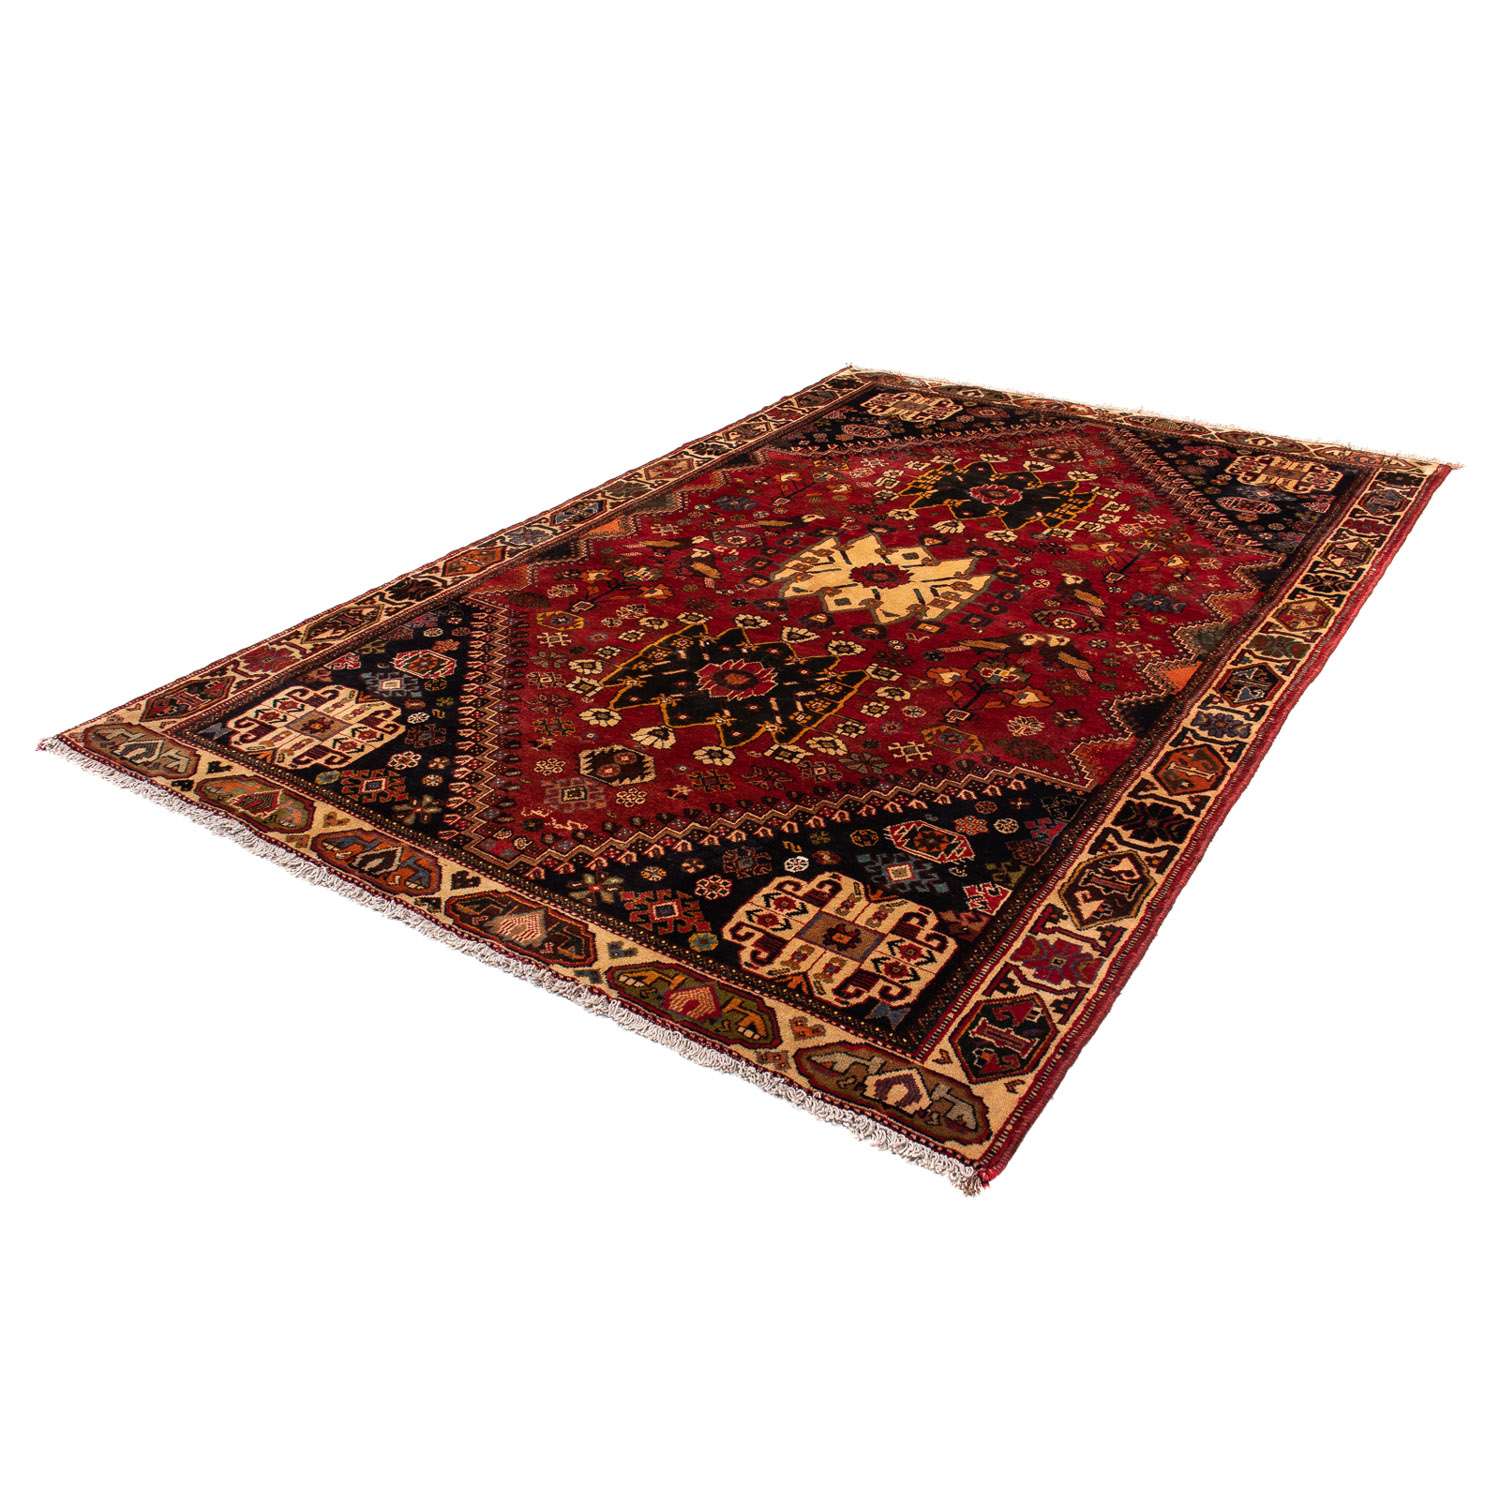 Perski dywan - Nomadyczny - 284 x 185 cm - ciemna czerwień